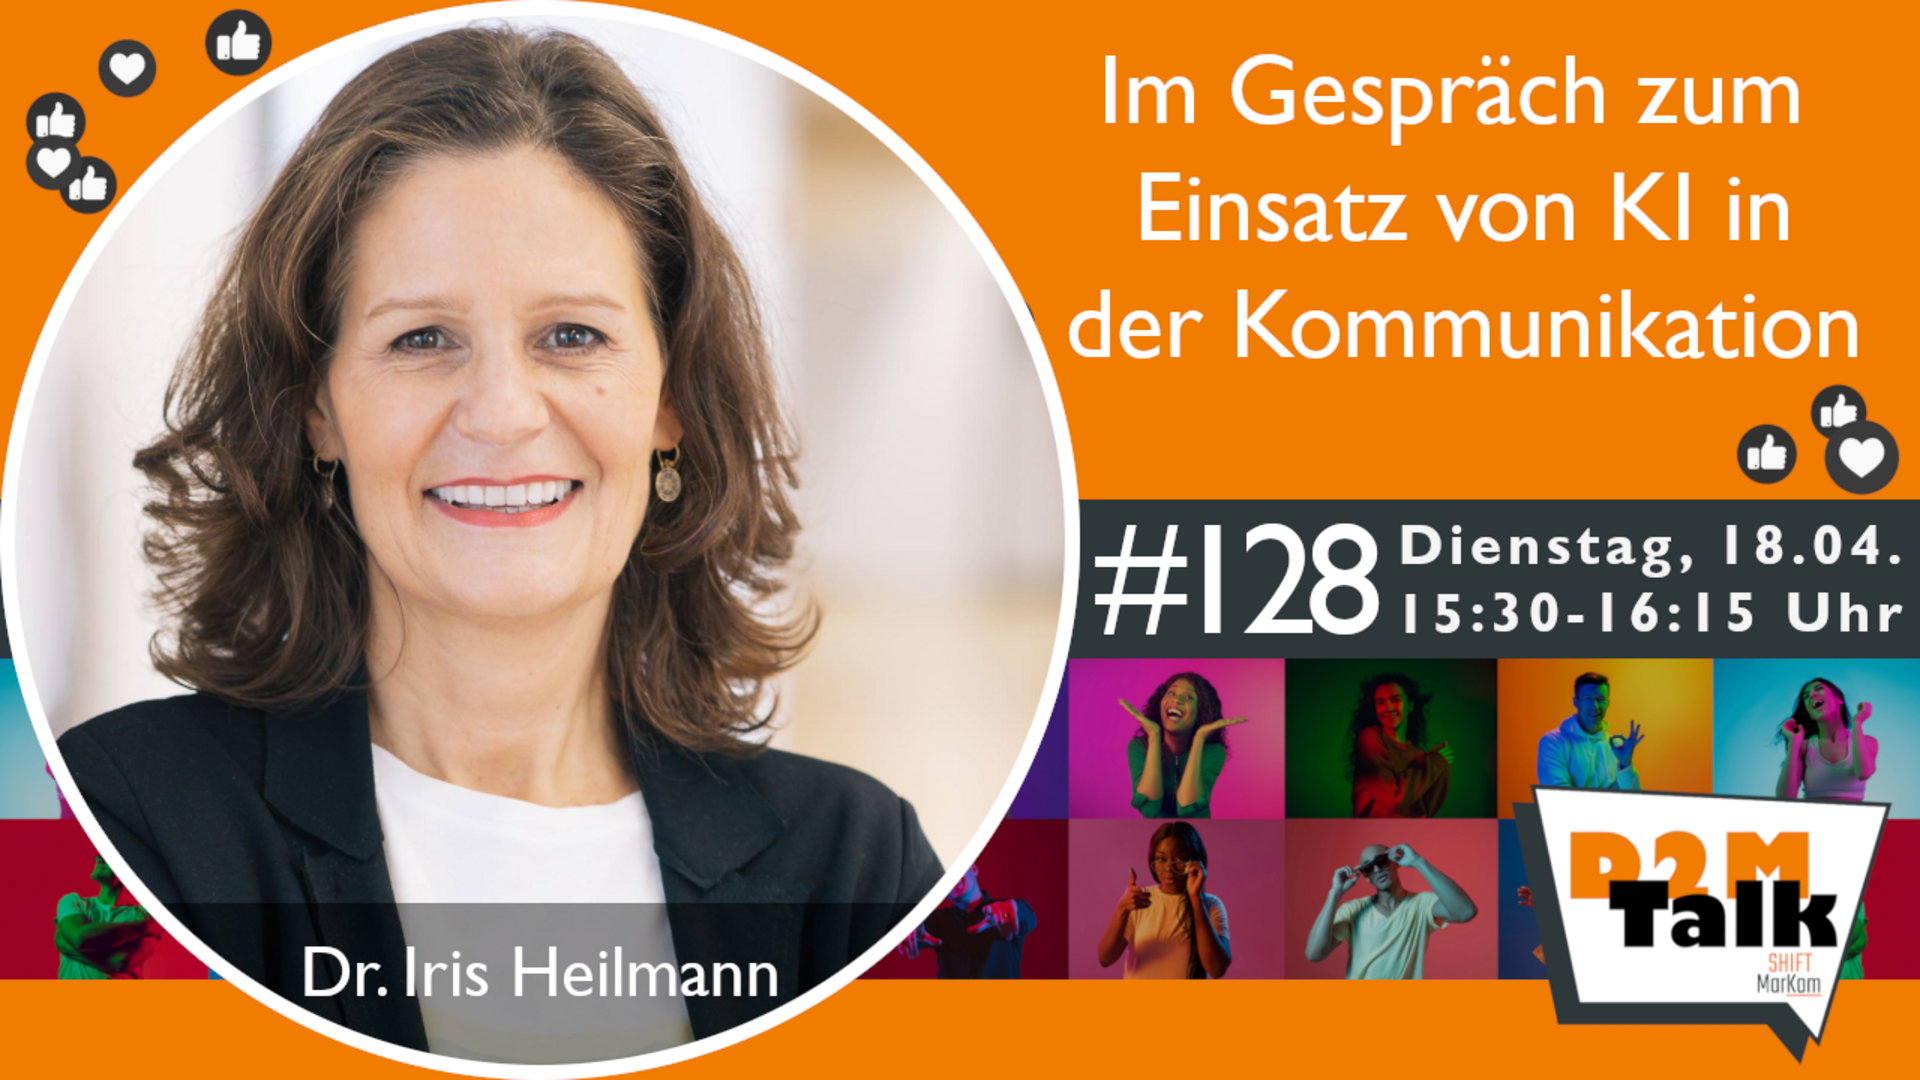 Im Gespräch mit Dr. Iris Heilmann zu den Veränderungen in der Kommunikation durch KI